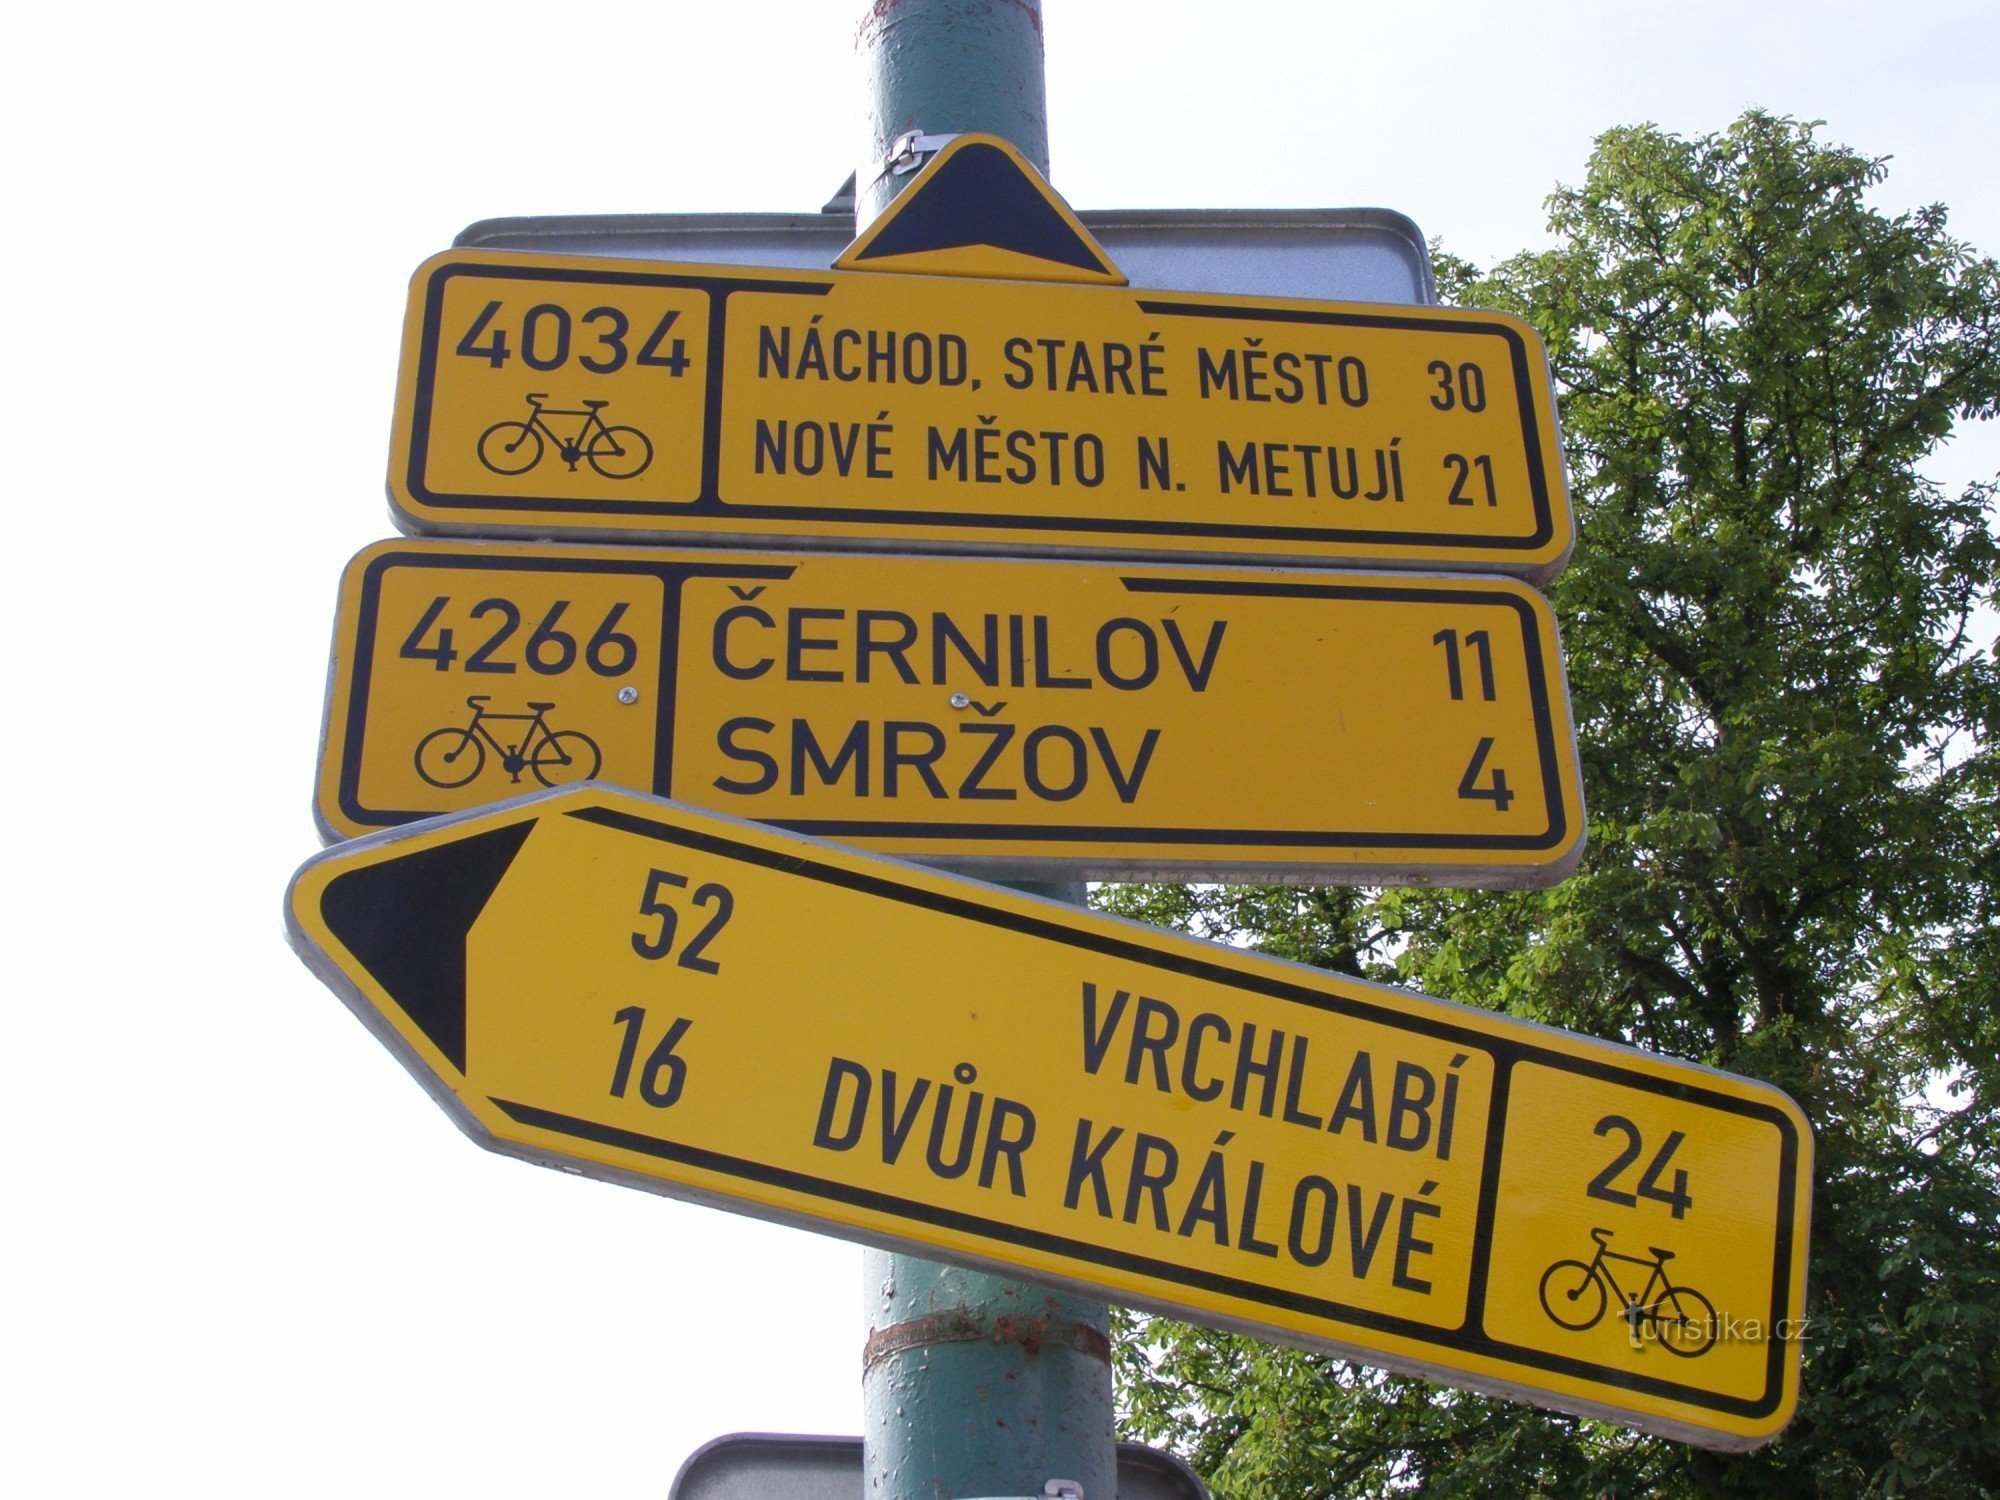 σταυροδρόμι ποδηλατικού τουρισμού - Josefov, κοντά στη γέφυρα